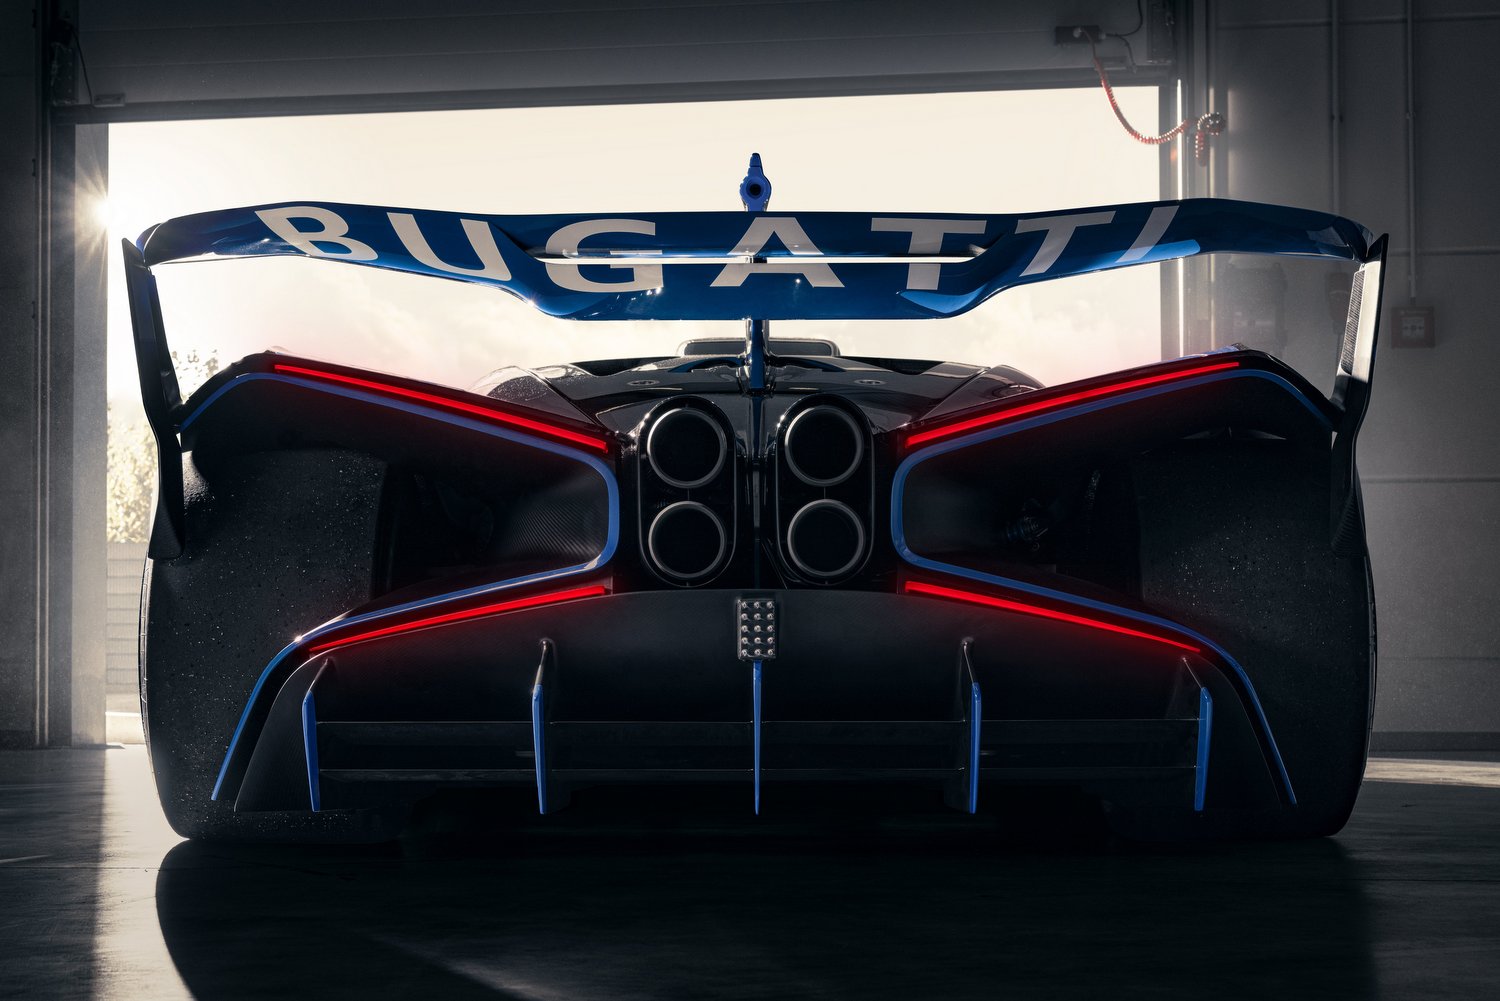 Libabőrös burkolat teszi áramvonalasabbá a Bugatti versenyautóját 19